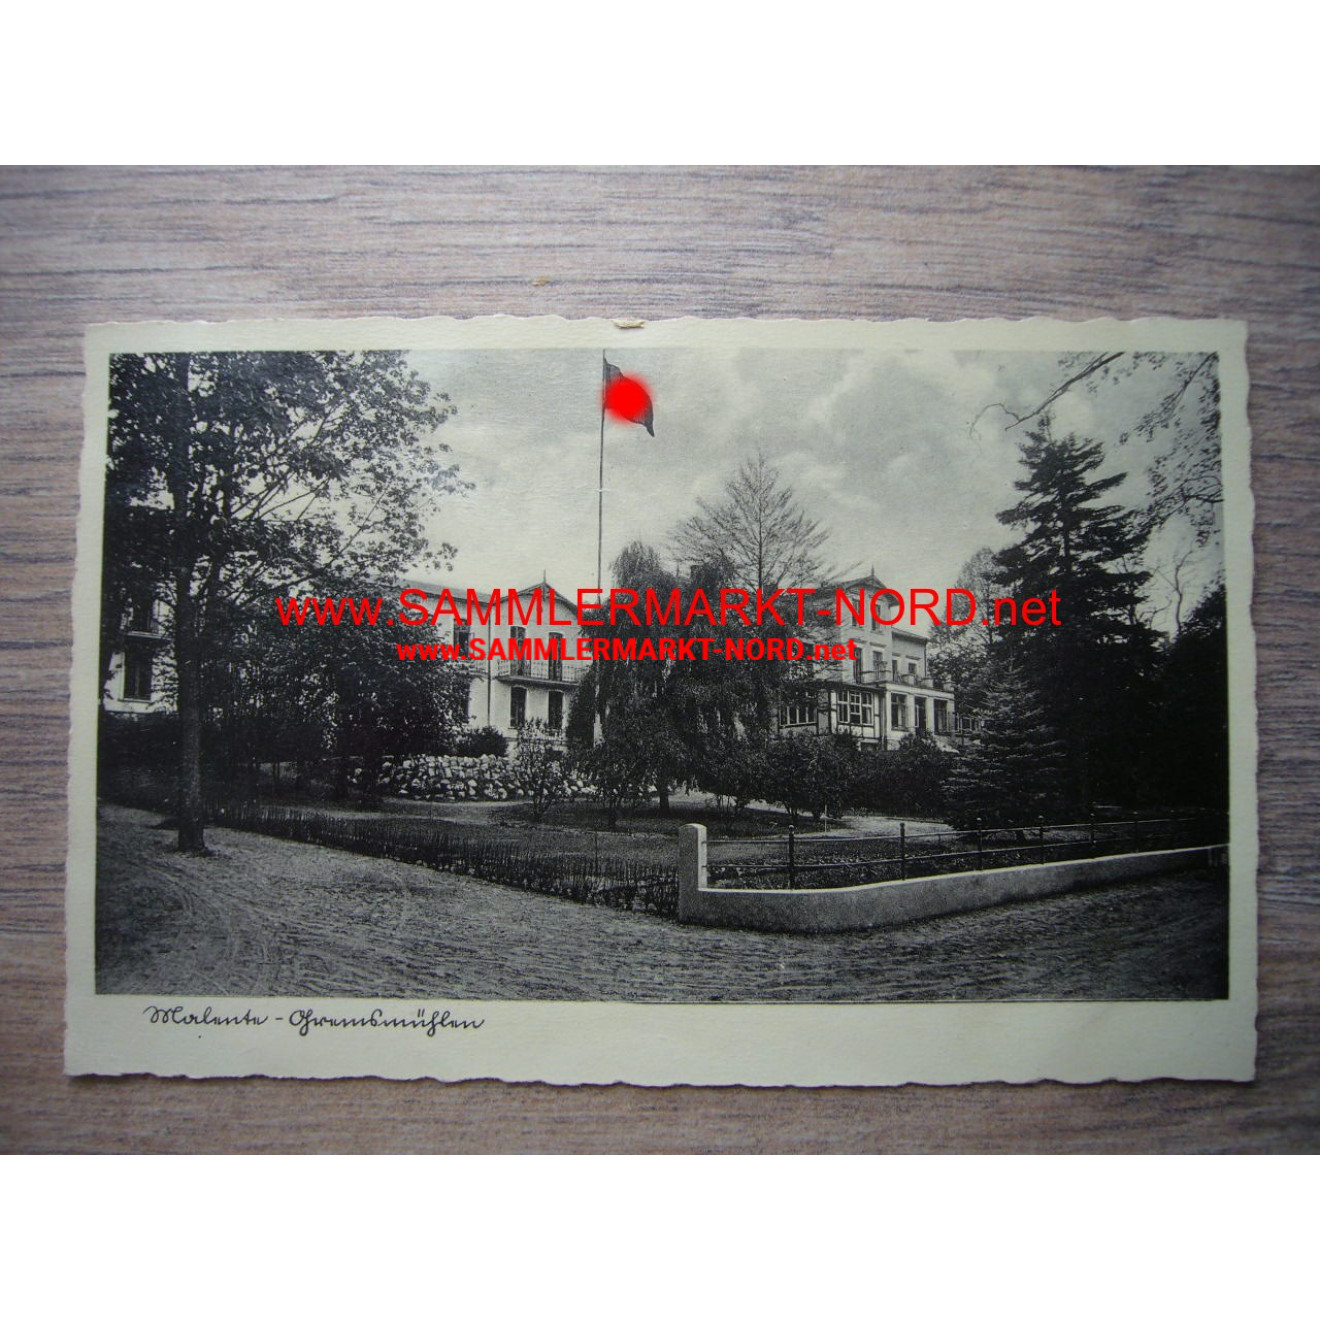 HJ leader School Malente-Gremsmühlen - Postcard